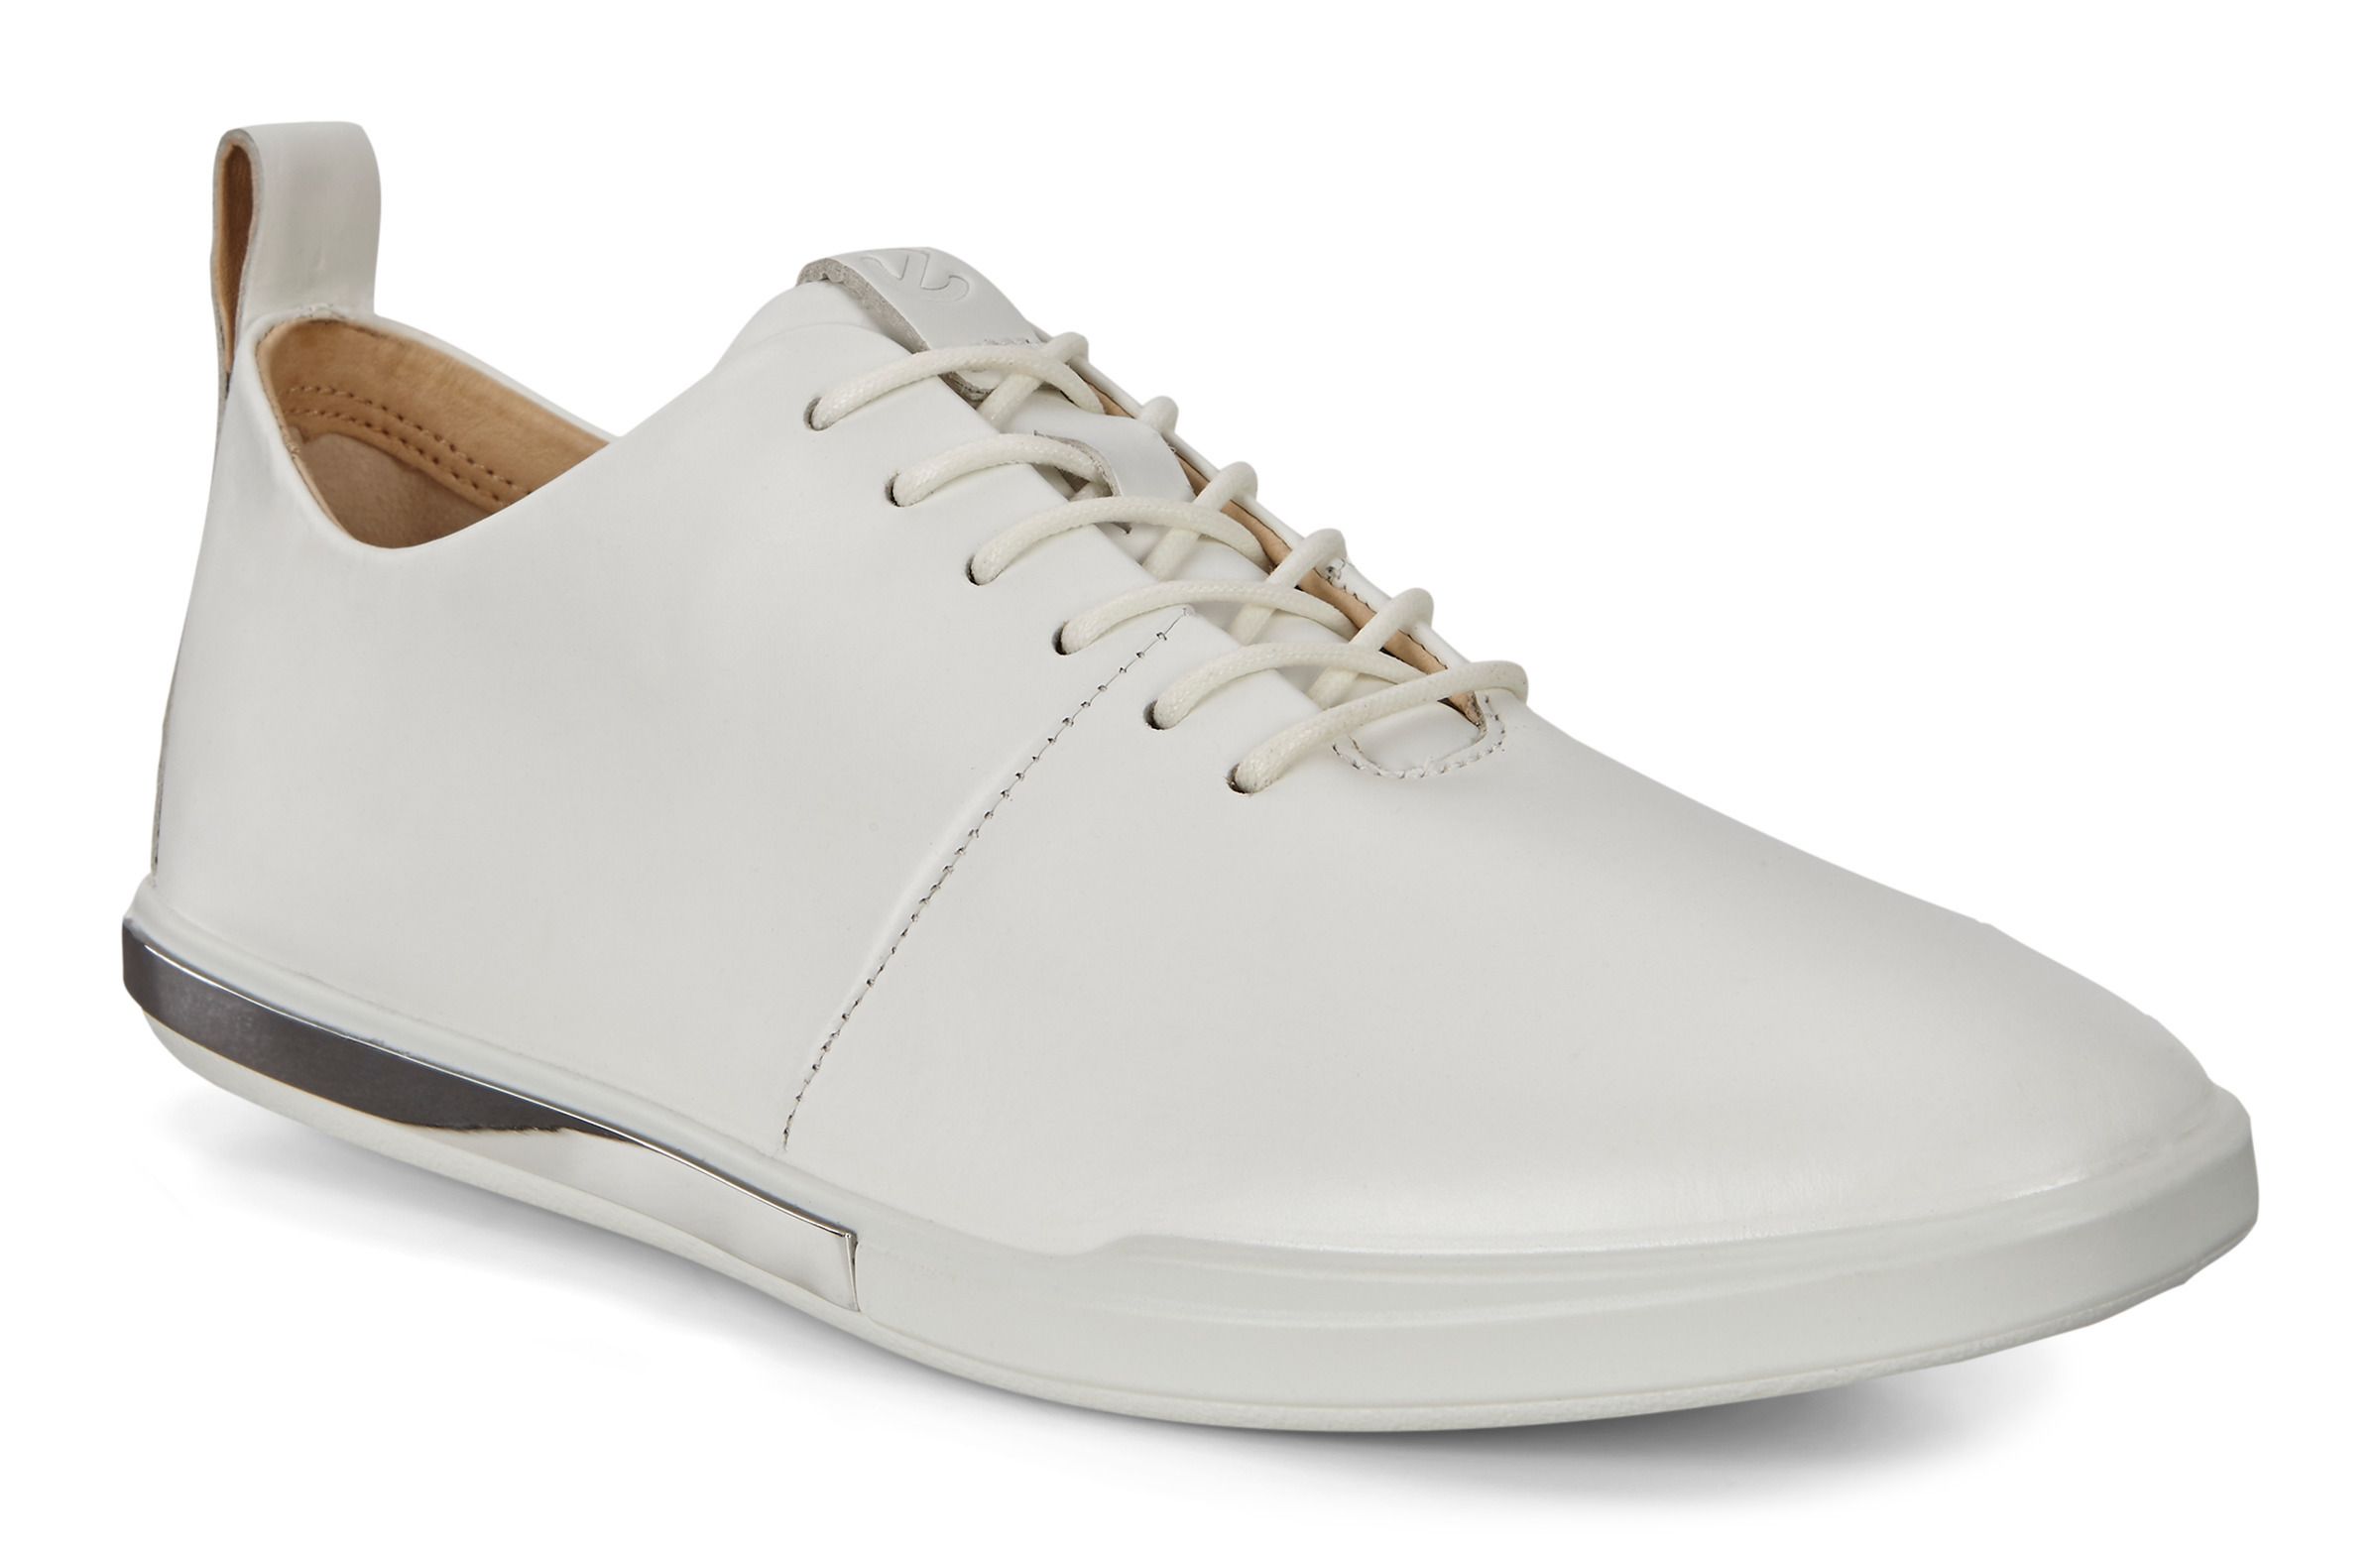 stil overdrive Pol ecco katalog 2019 - Tienda Online de Zapatos, Ropa y Complementos de marca